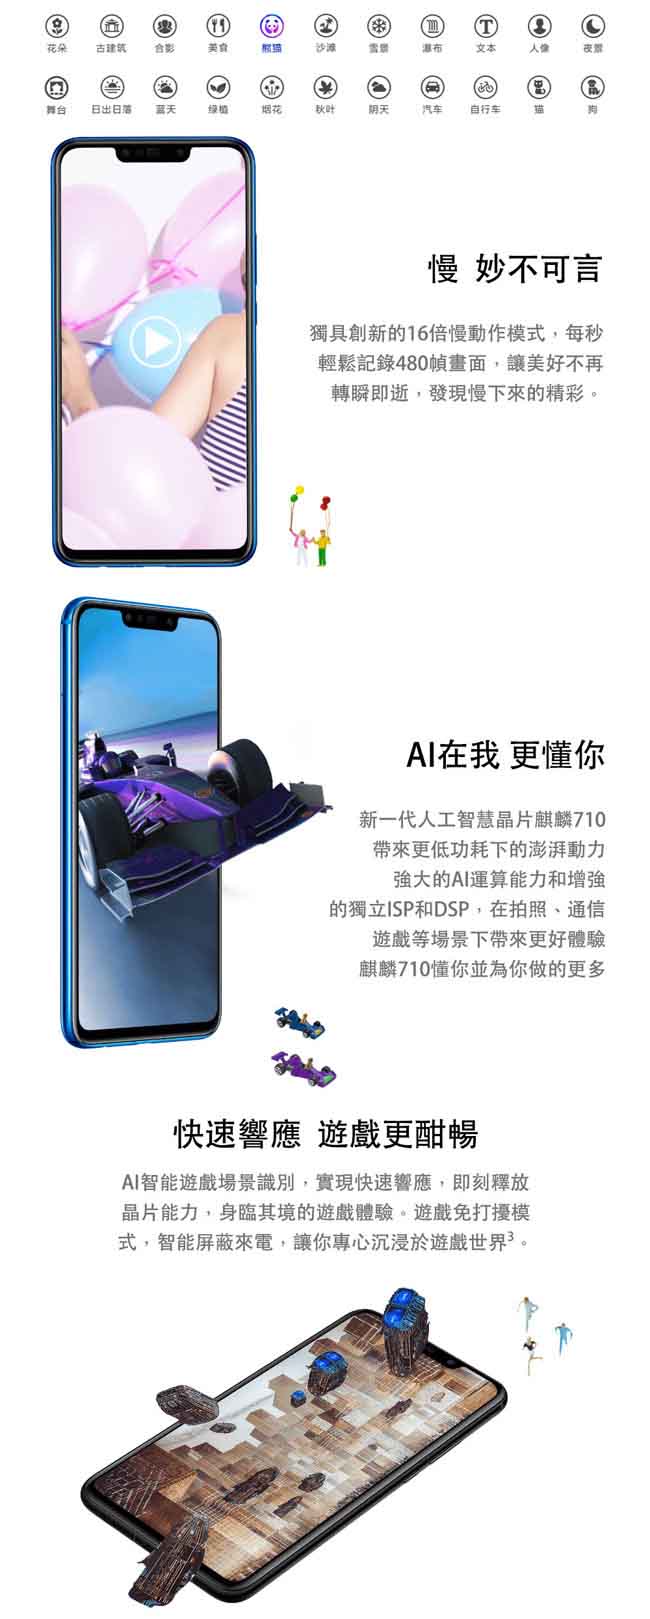 華為 Nova 3i (4G/128G) 6.3吋玻璃流光美顏智慧手機